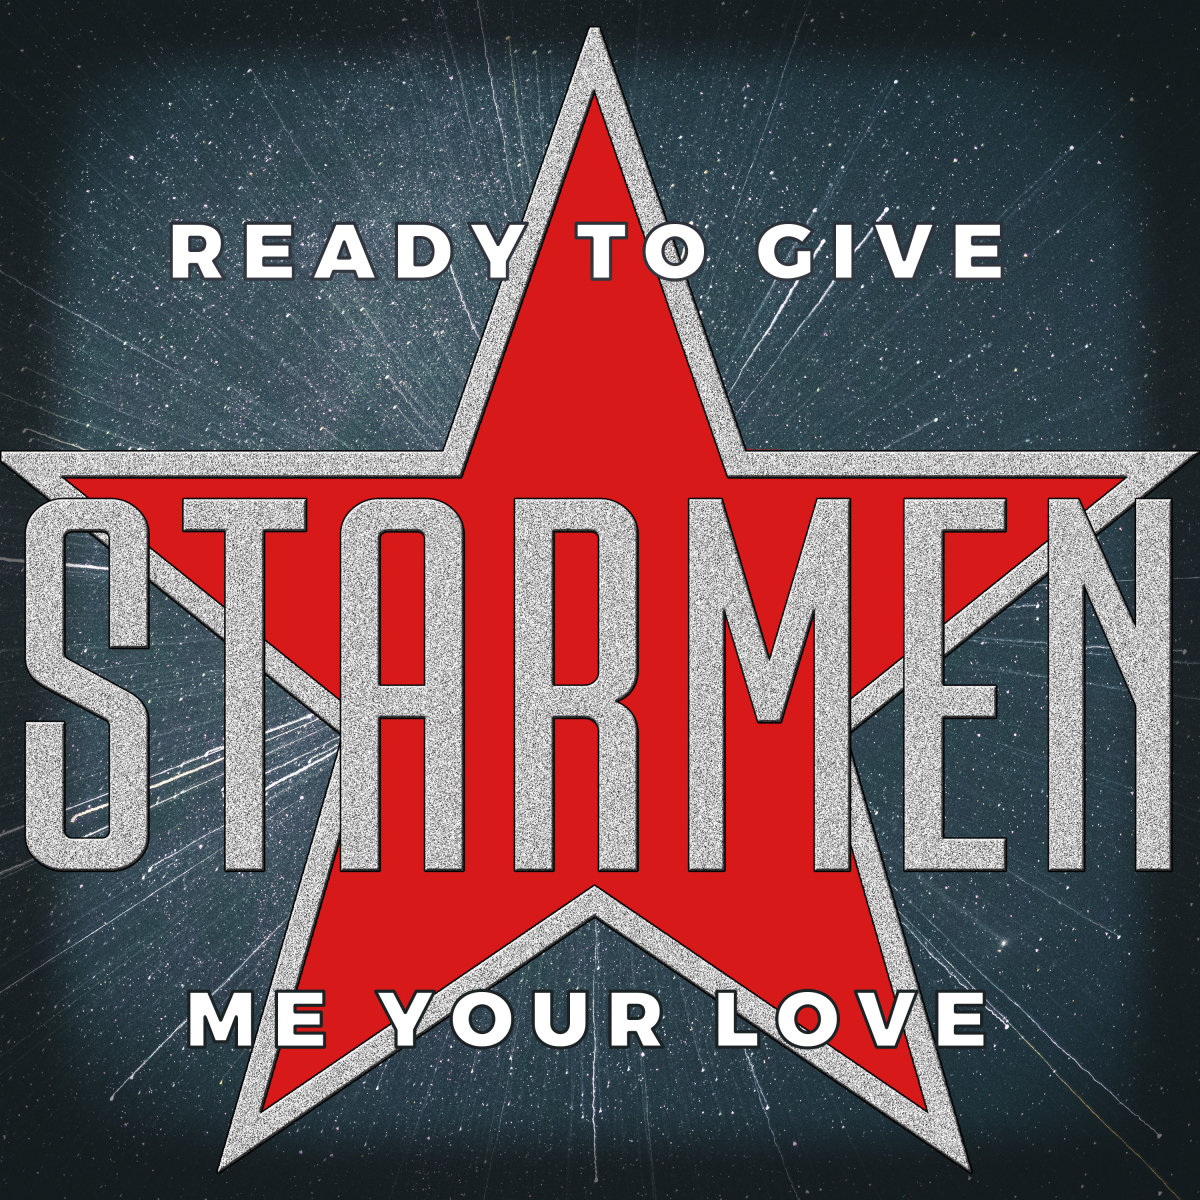 starman album cover